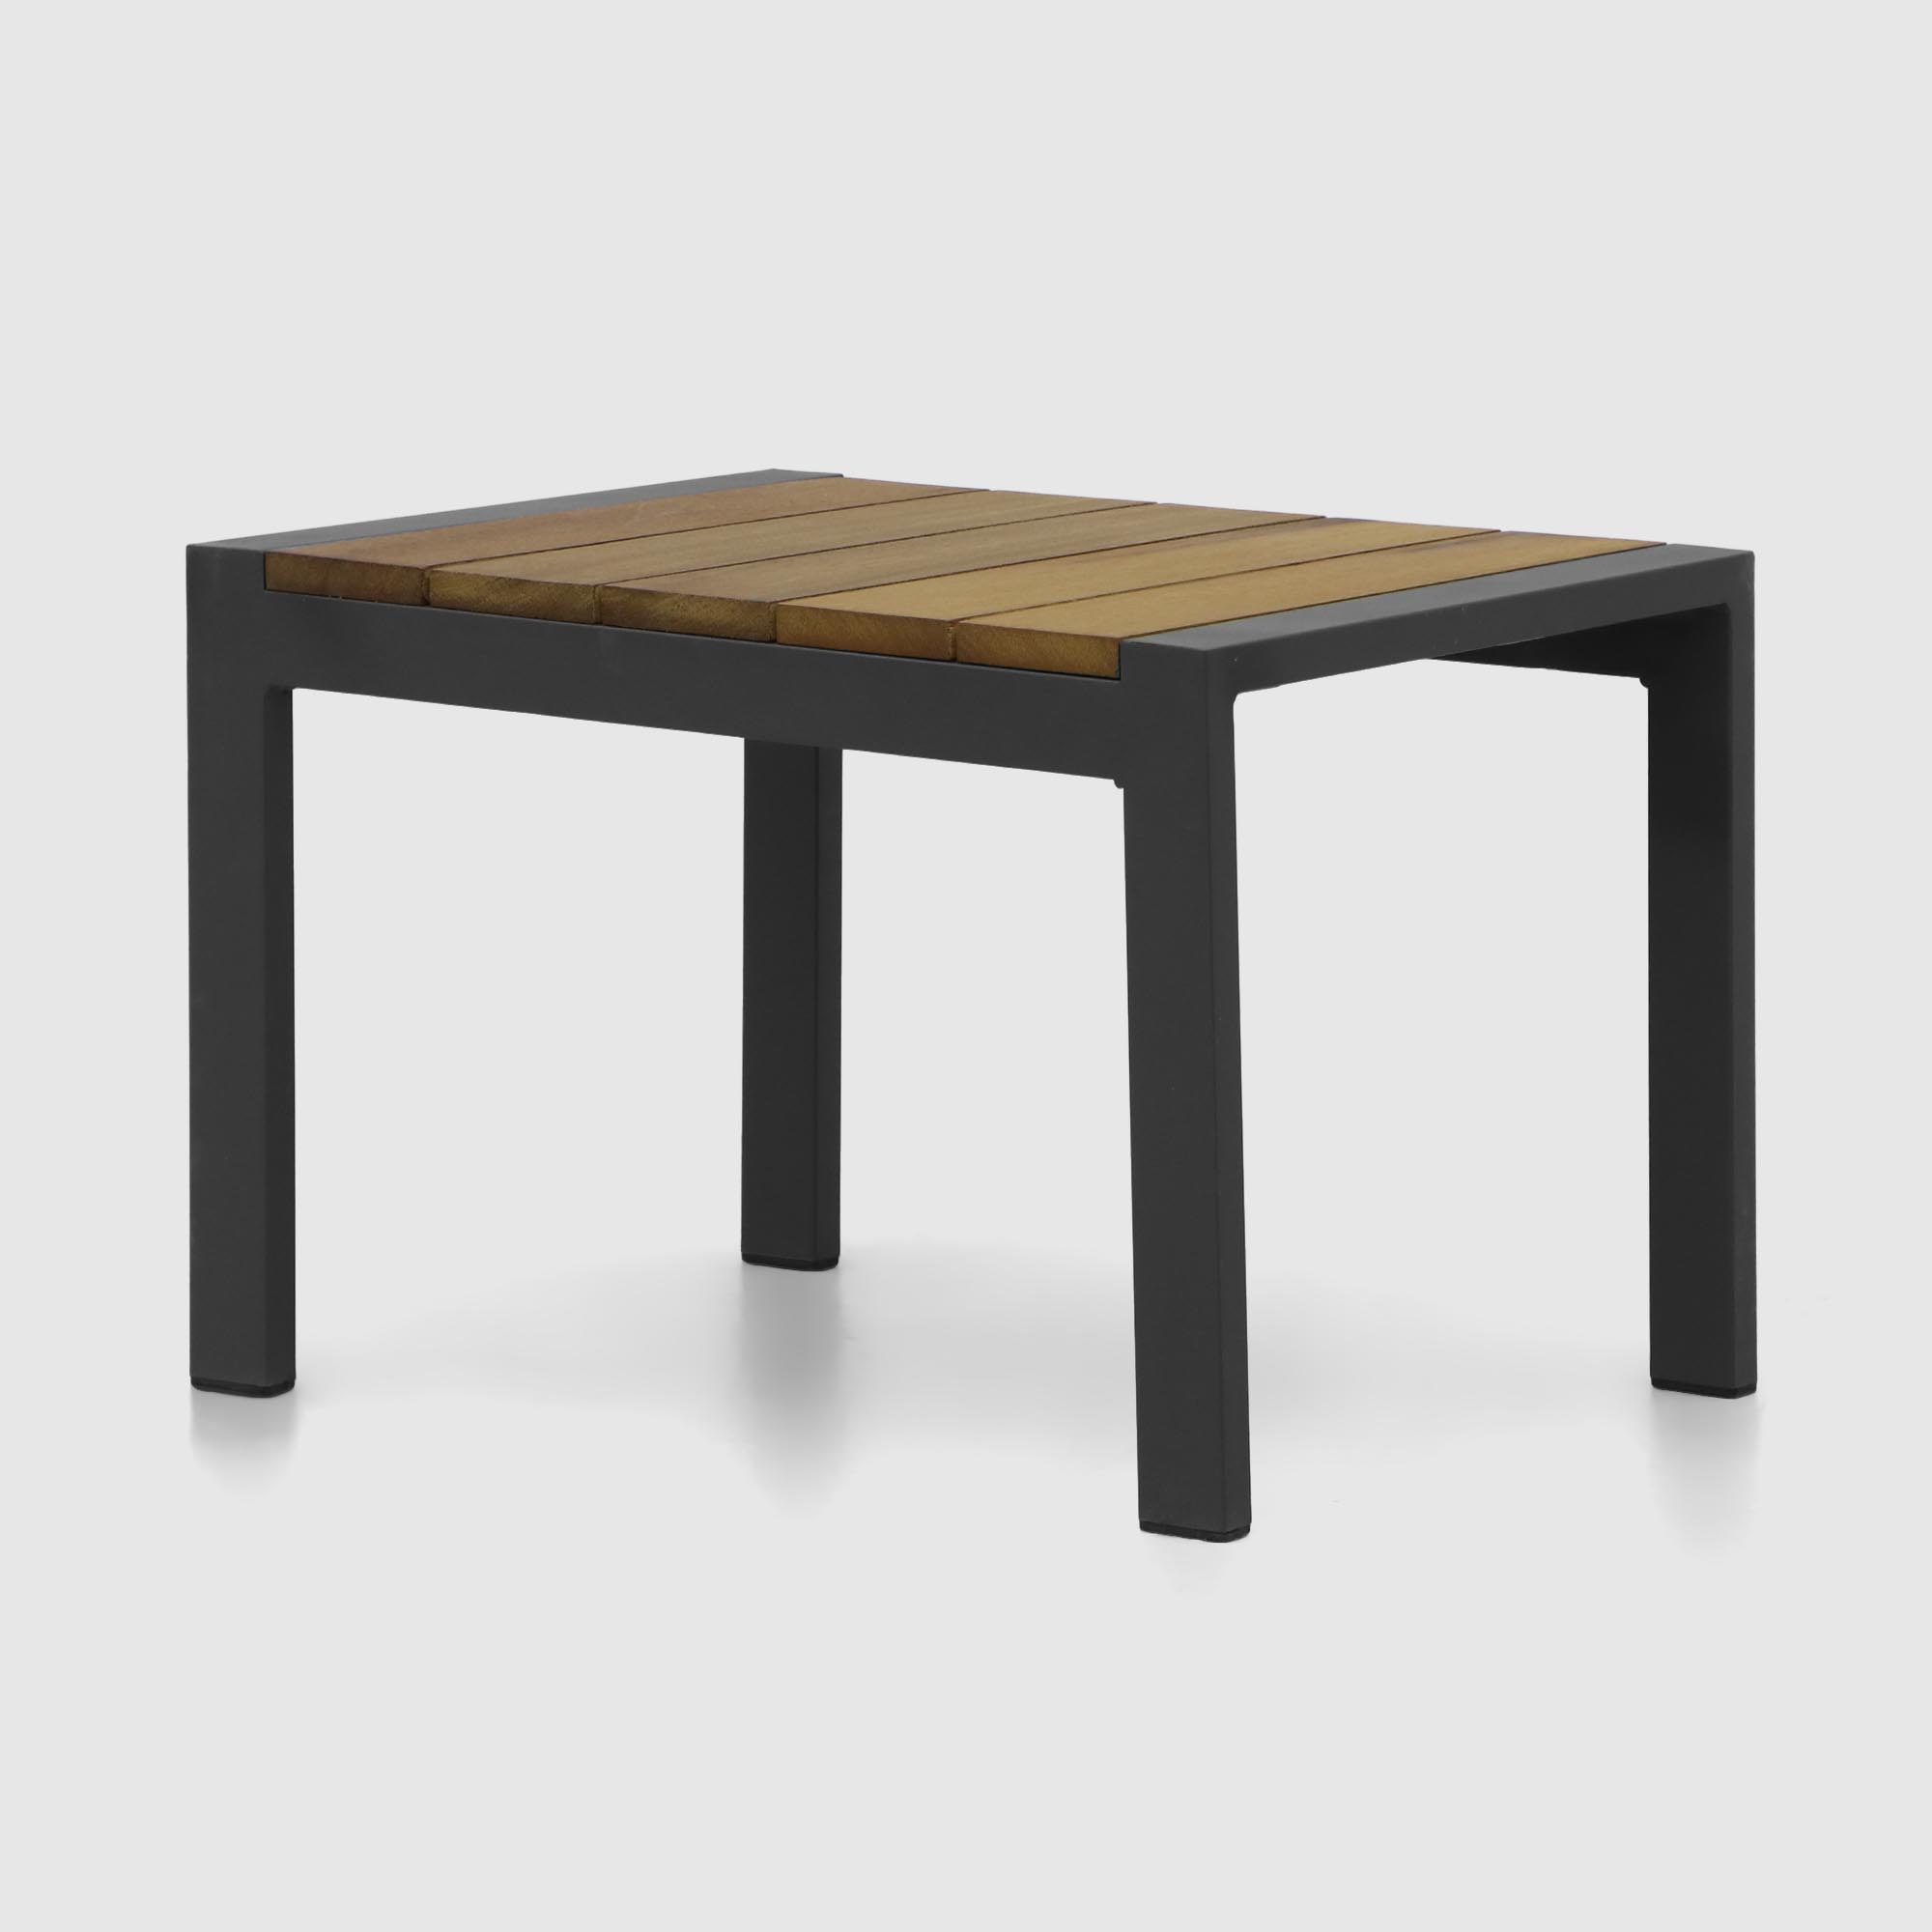 Комплект мебели Emek garden столик и два шезлонга 3 предмета, цвет черный - фото 5